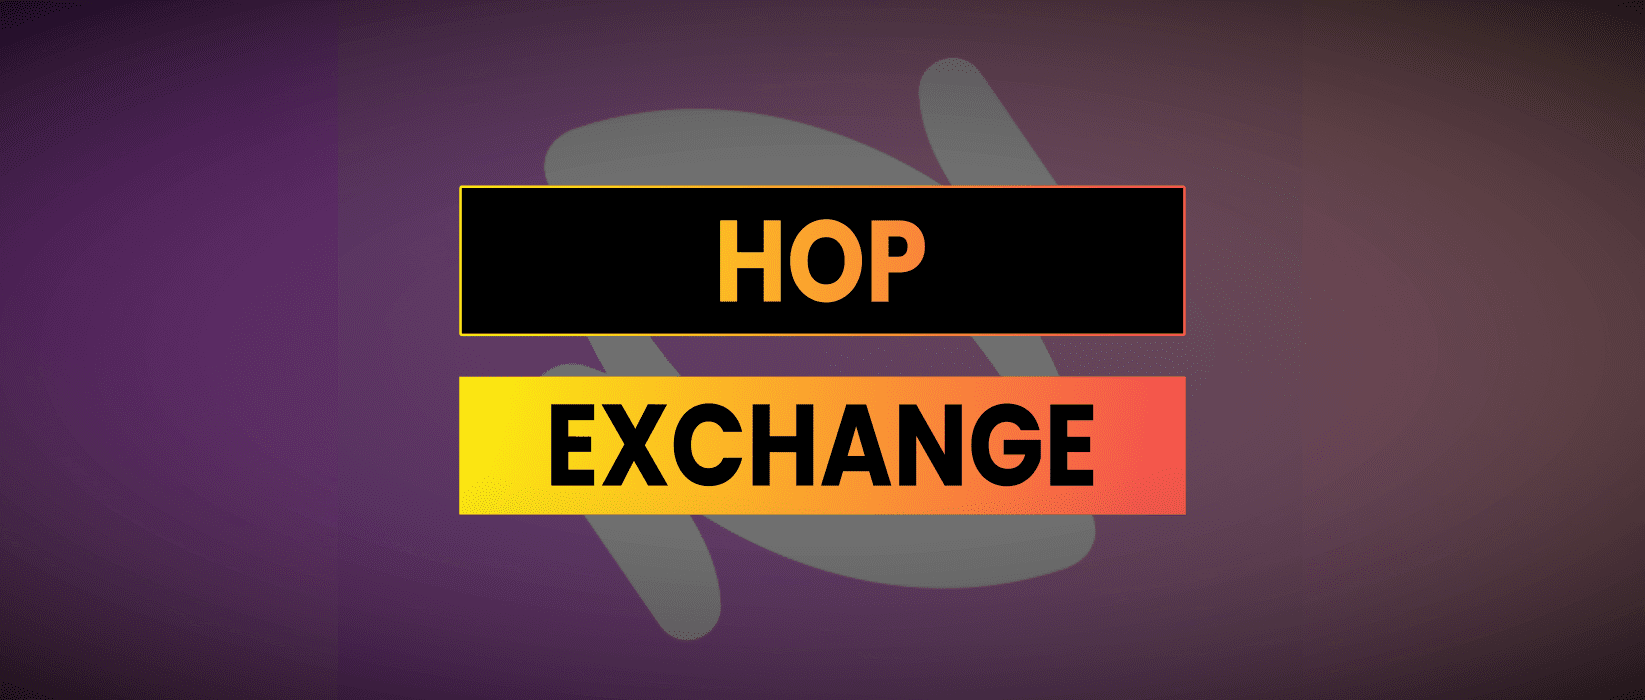 Hop Exchange